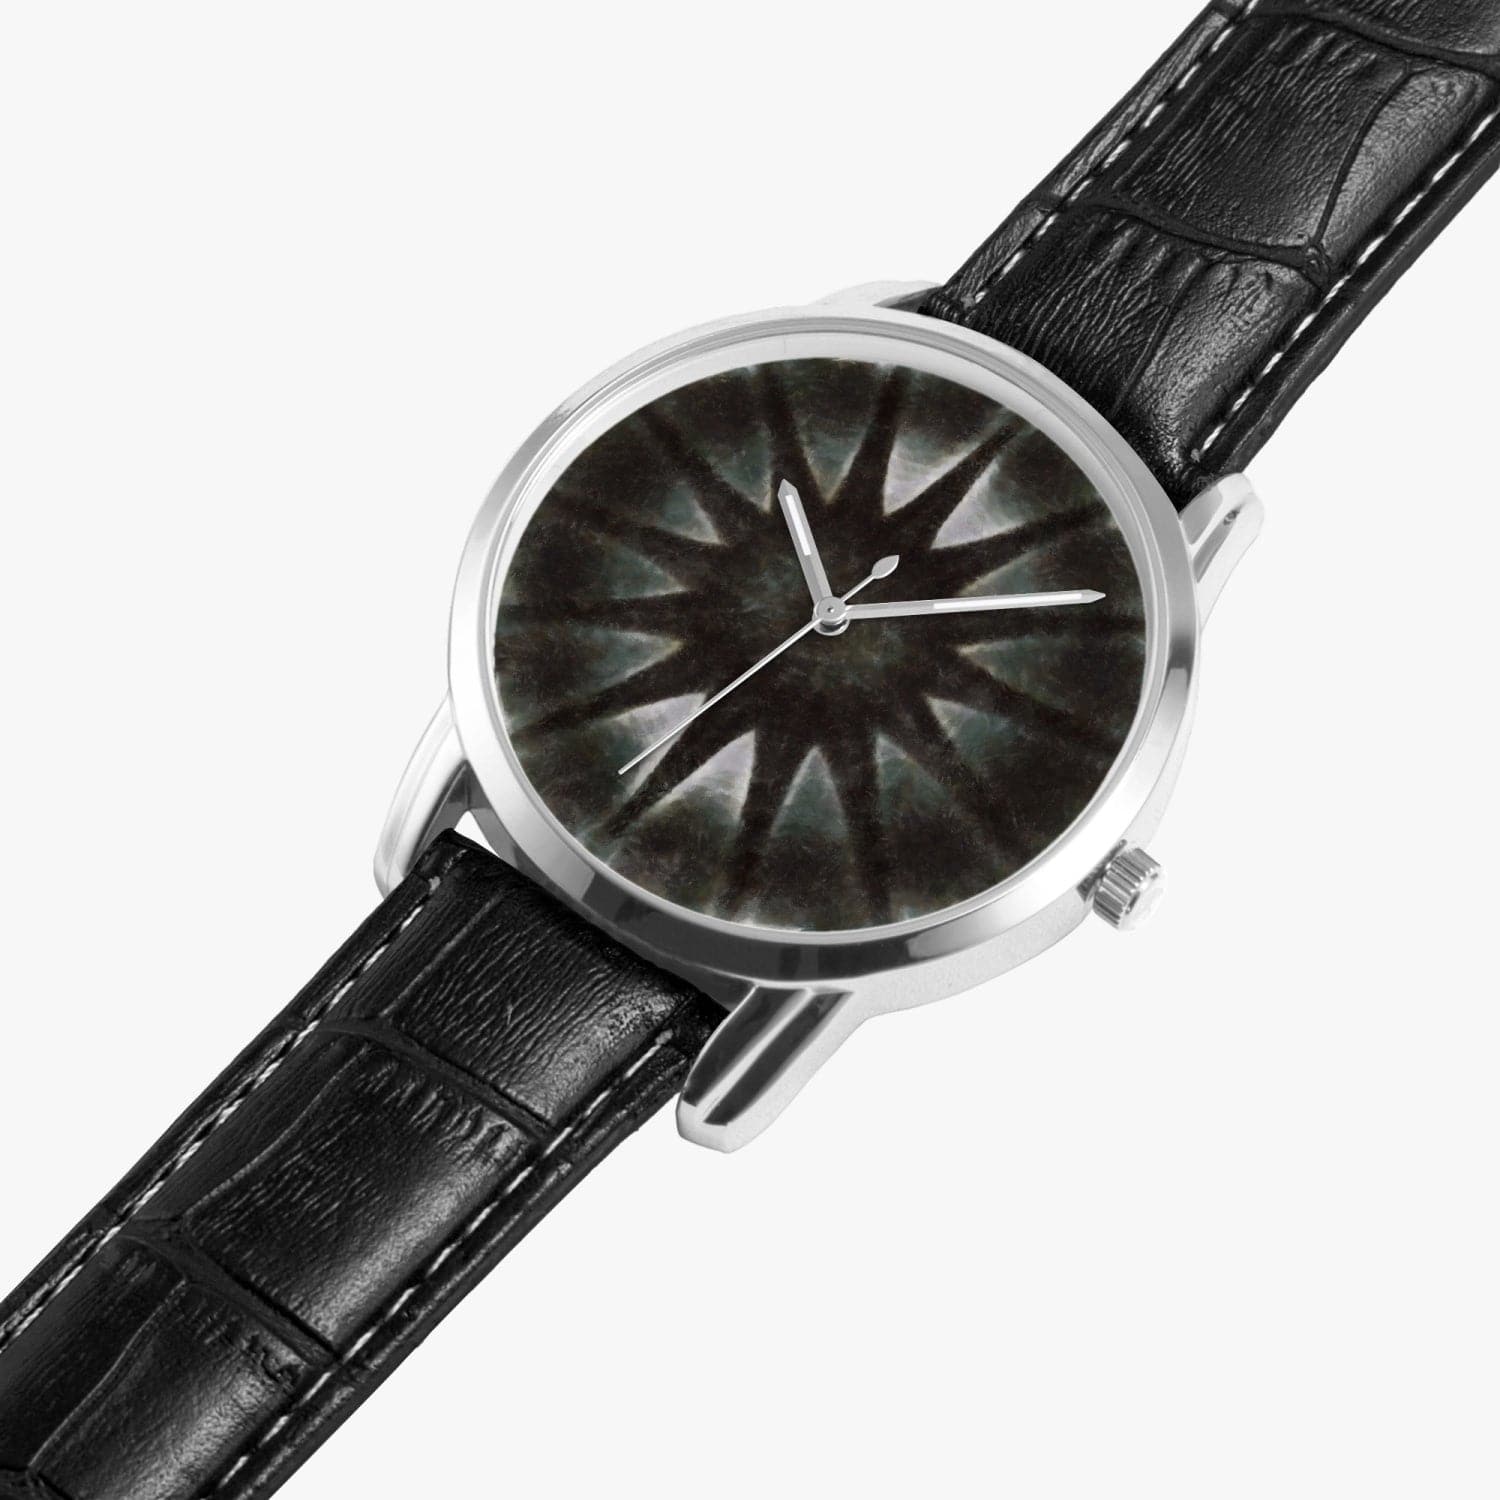 Black Mist  Wide Type Quartz watch by Humphrey Isselt, for Sensus Studio Design